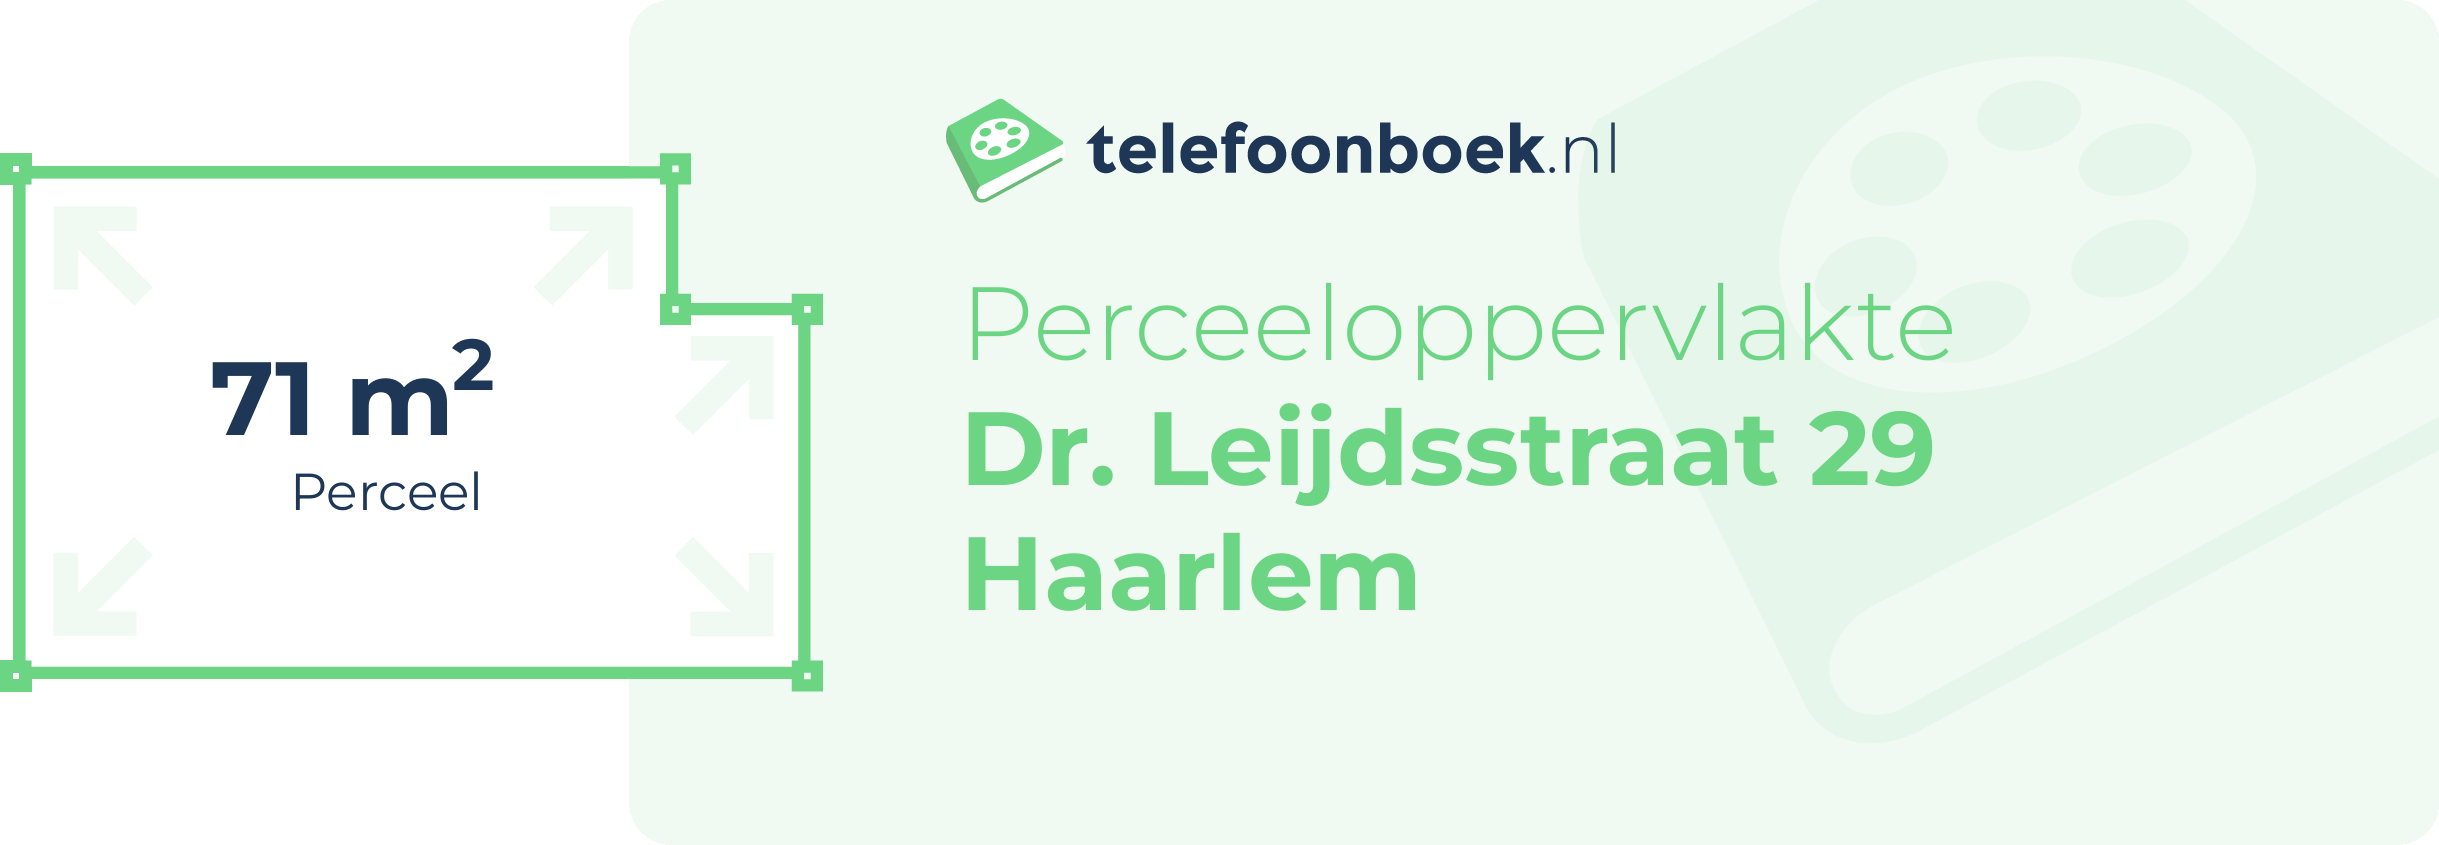 Perceeloppervlakte Dr. Leijdsstraat 29 Haarlem